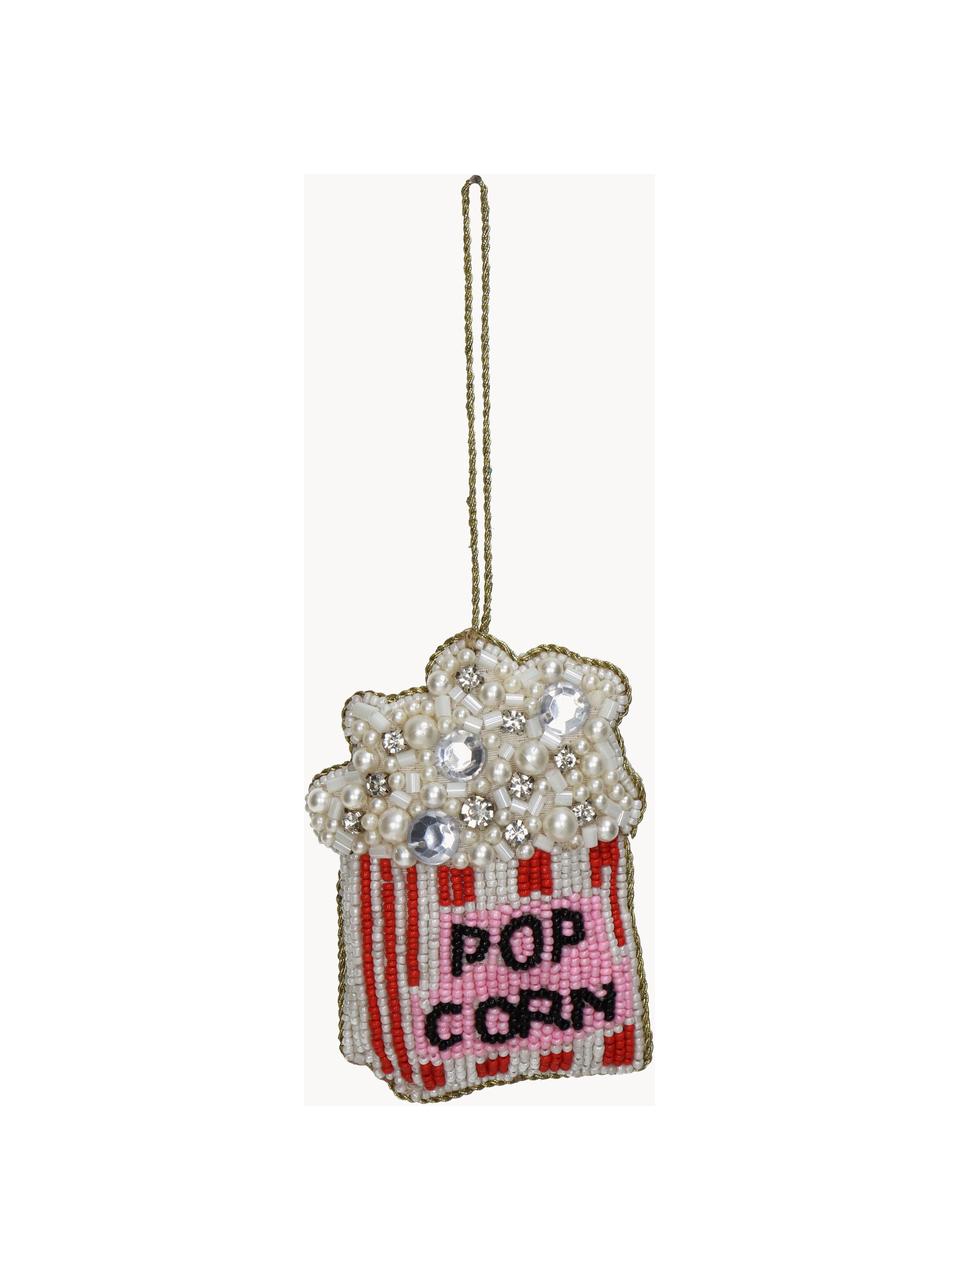 Addobbo per albero con perline Popcorn, Vetro, perline di plastica, Bianco, rosso, rosa, Larg. 8 x Alt. 10 cm